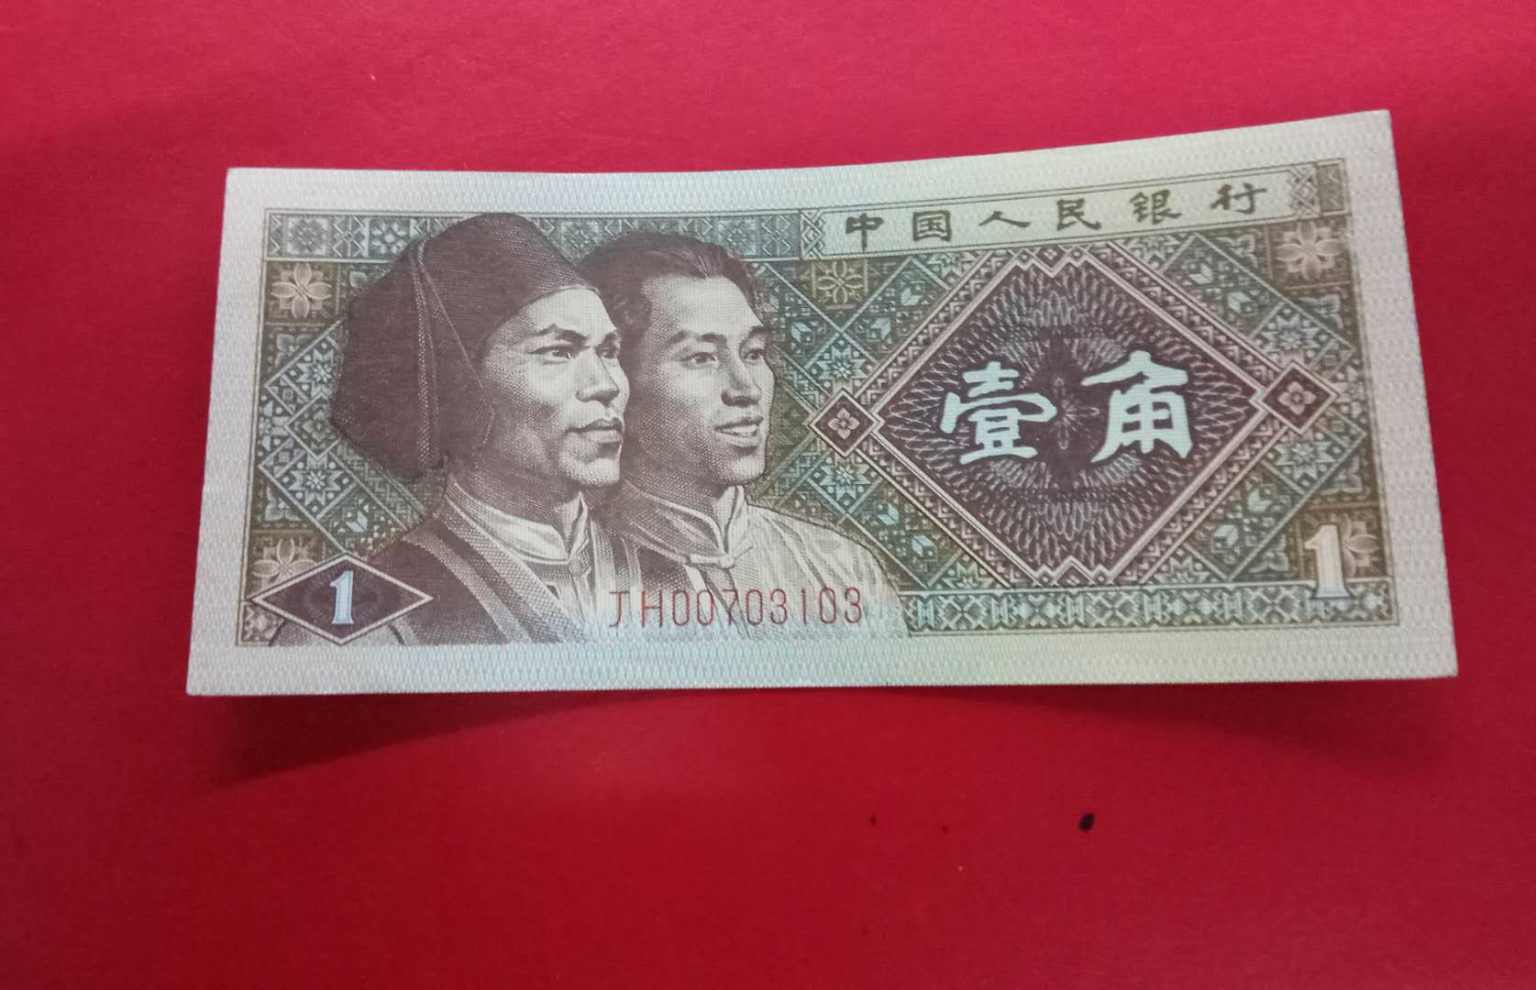 缅甸的钱币让我知道日本对这个国家的影响有多大 - 仰光游记攻略【携程攻略】